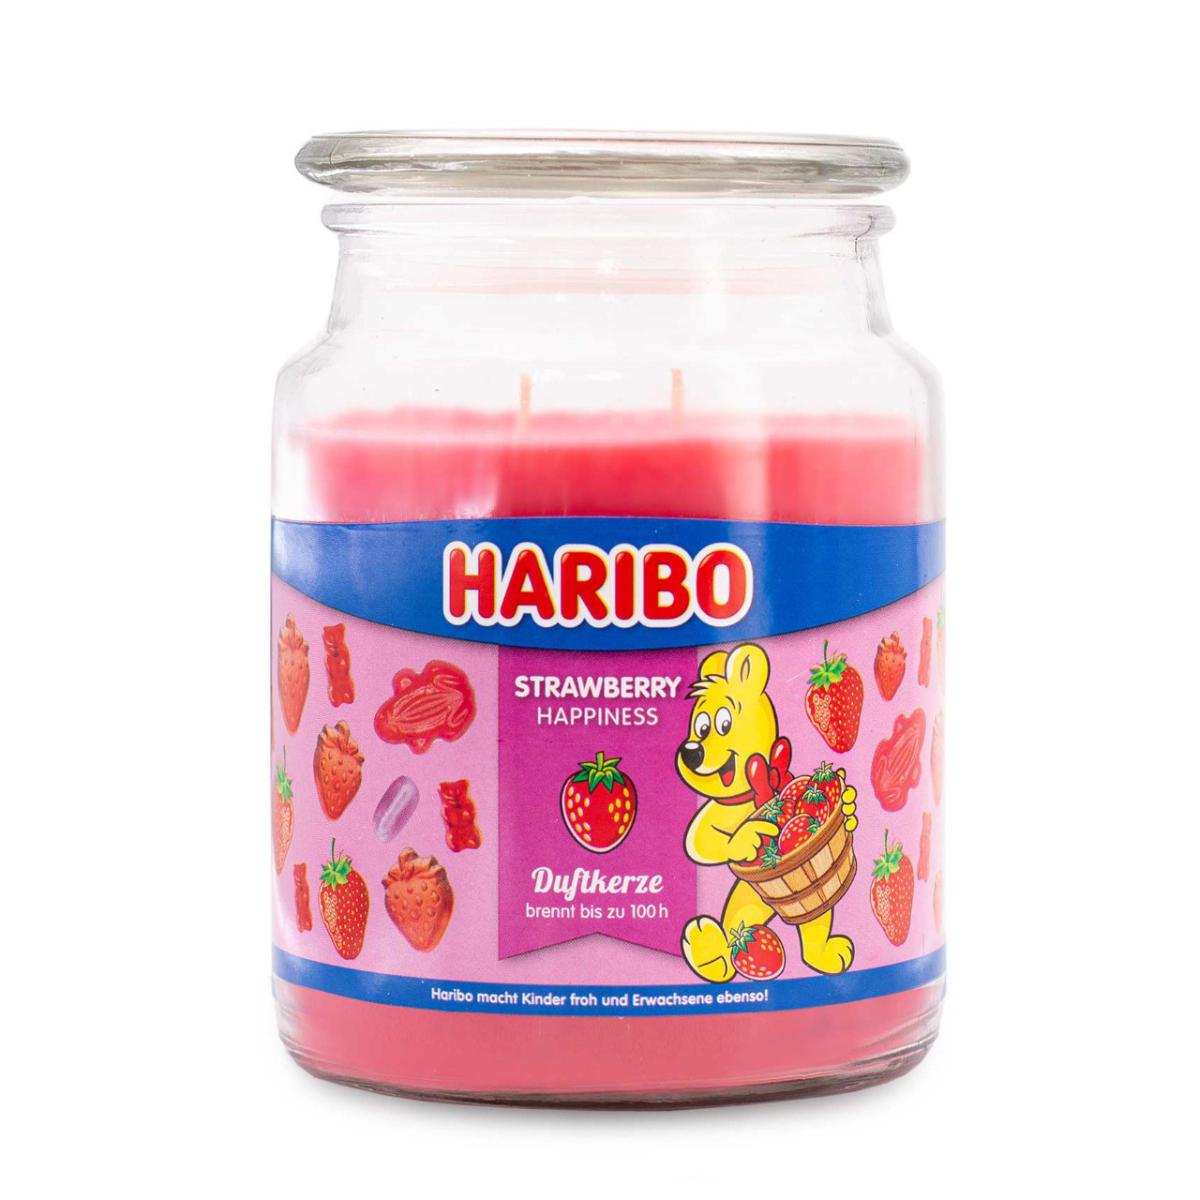 Strawberry Happiness - Duftkerze 510g von Haribo